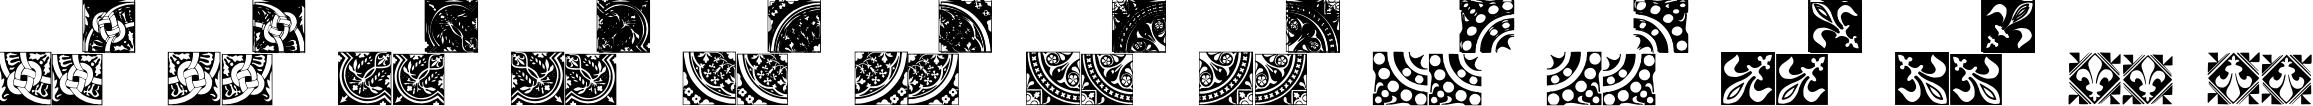 Пример написания английского алфавита шрифтом Medieval Tiles I